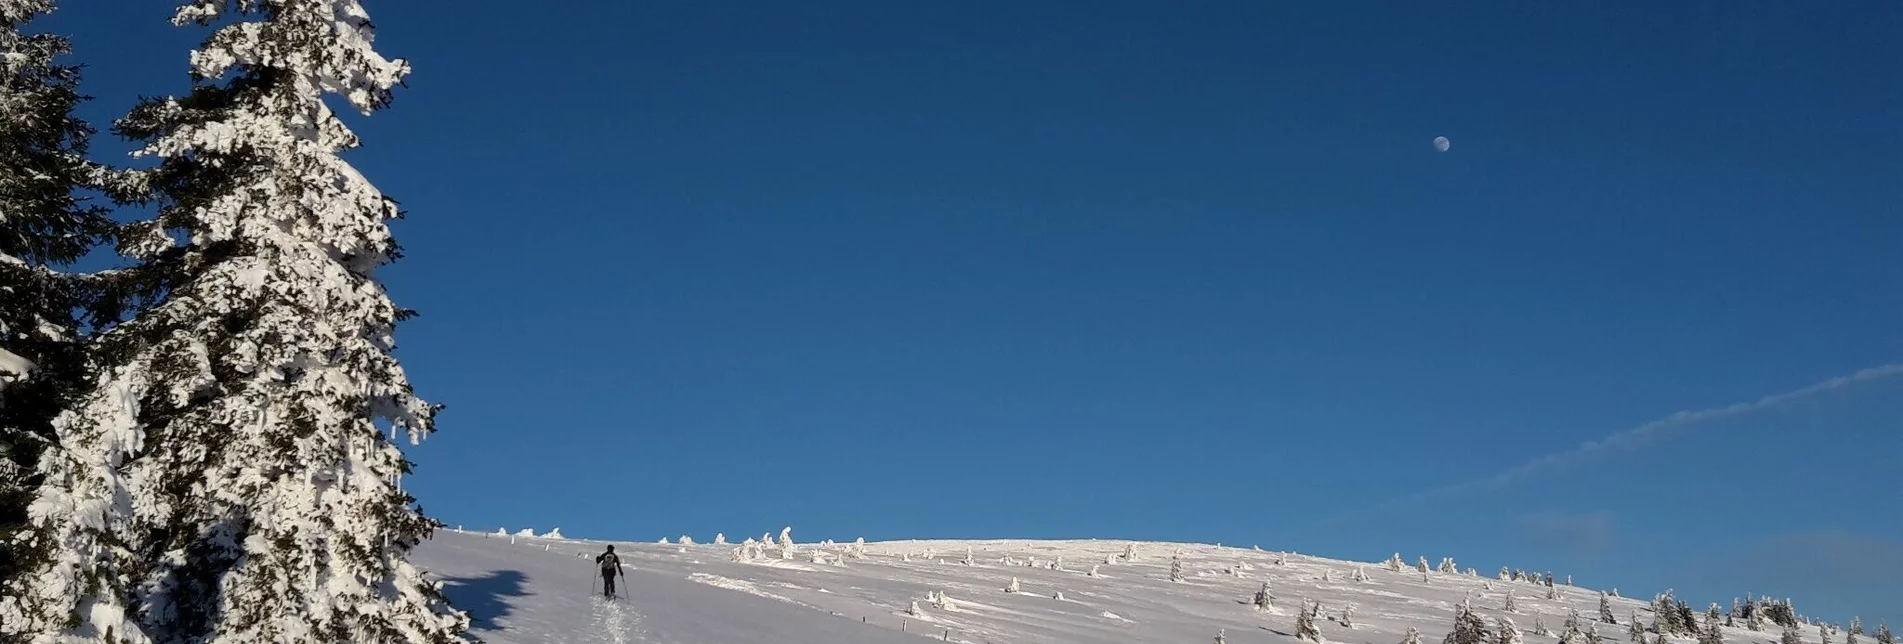 Ski Touring From Rettenegg to the Stuhleck - Touren-Impression #1 | © Unbekannt